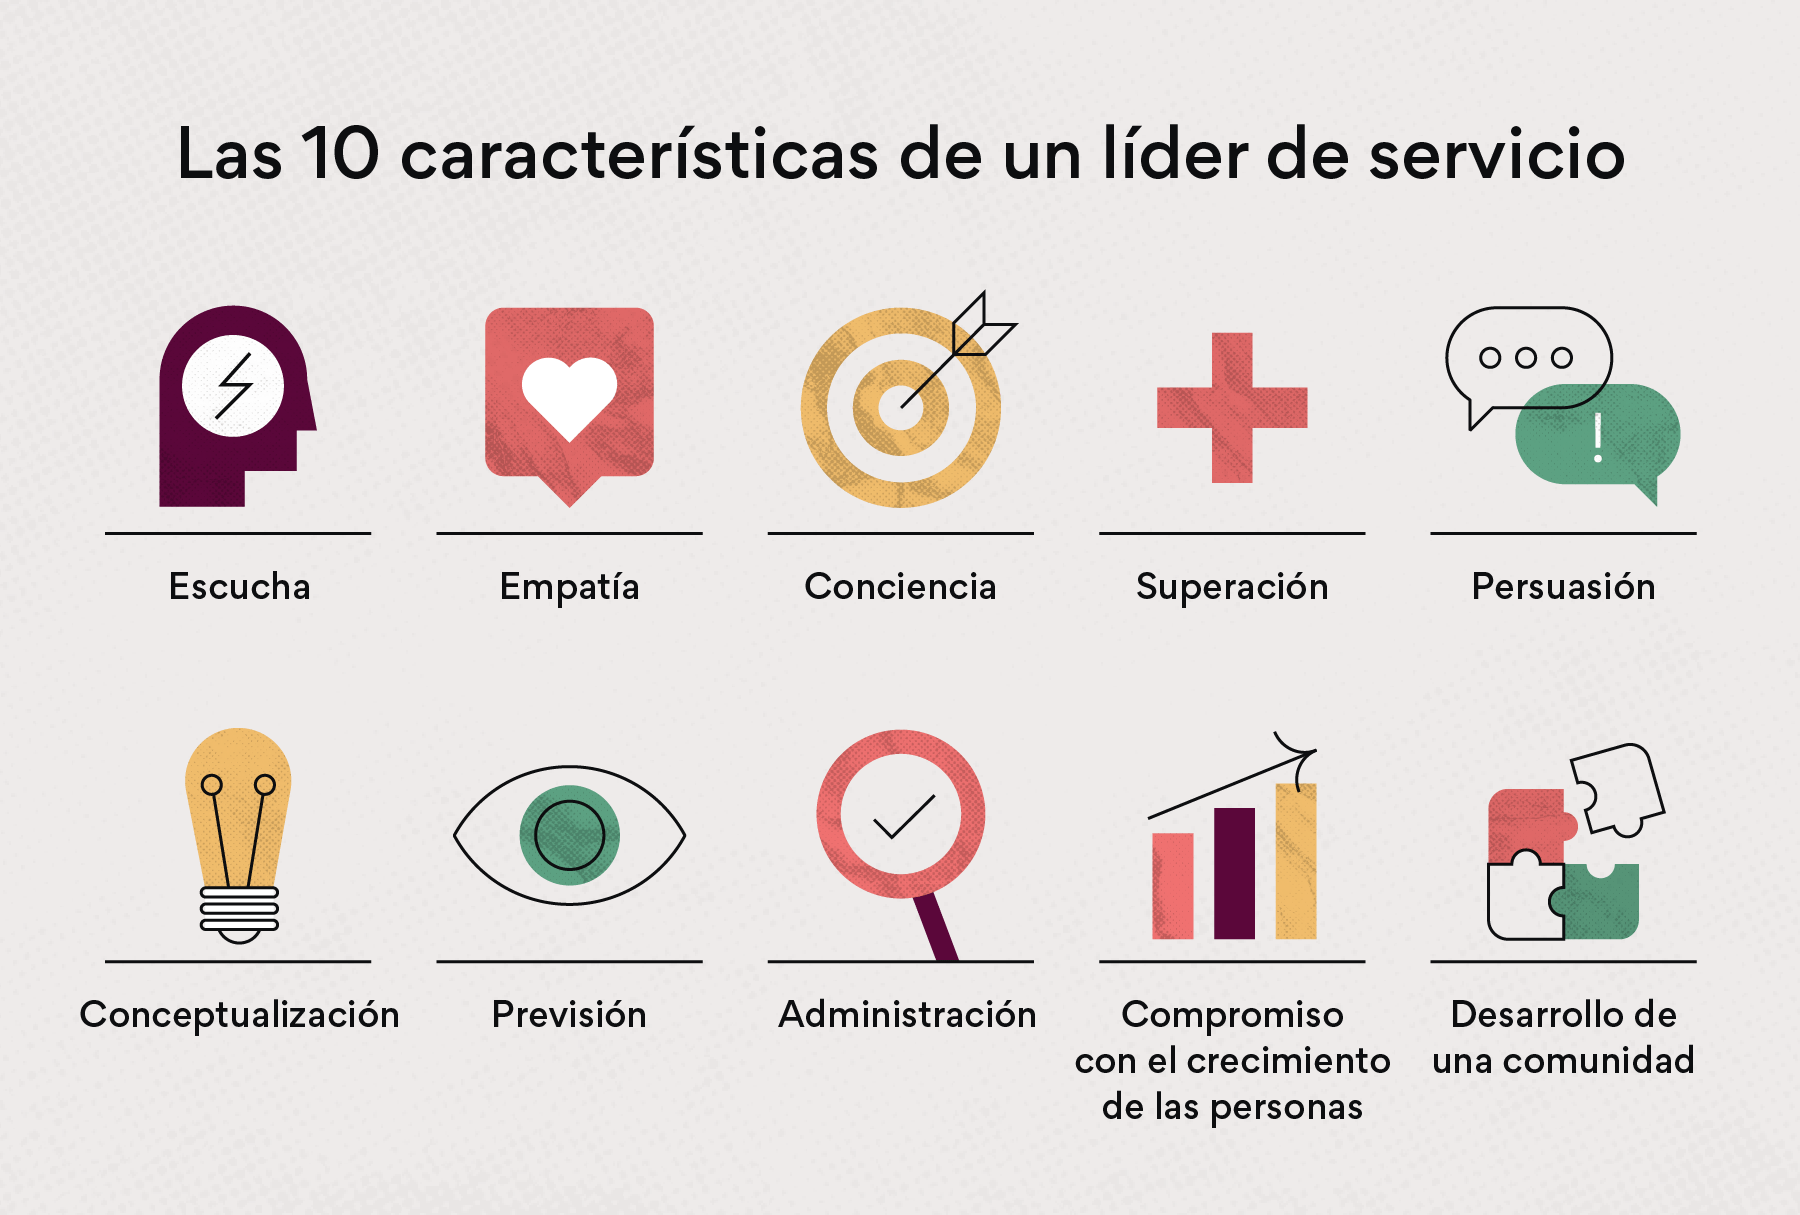 Las 10 características del liderazgo de servicio